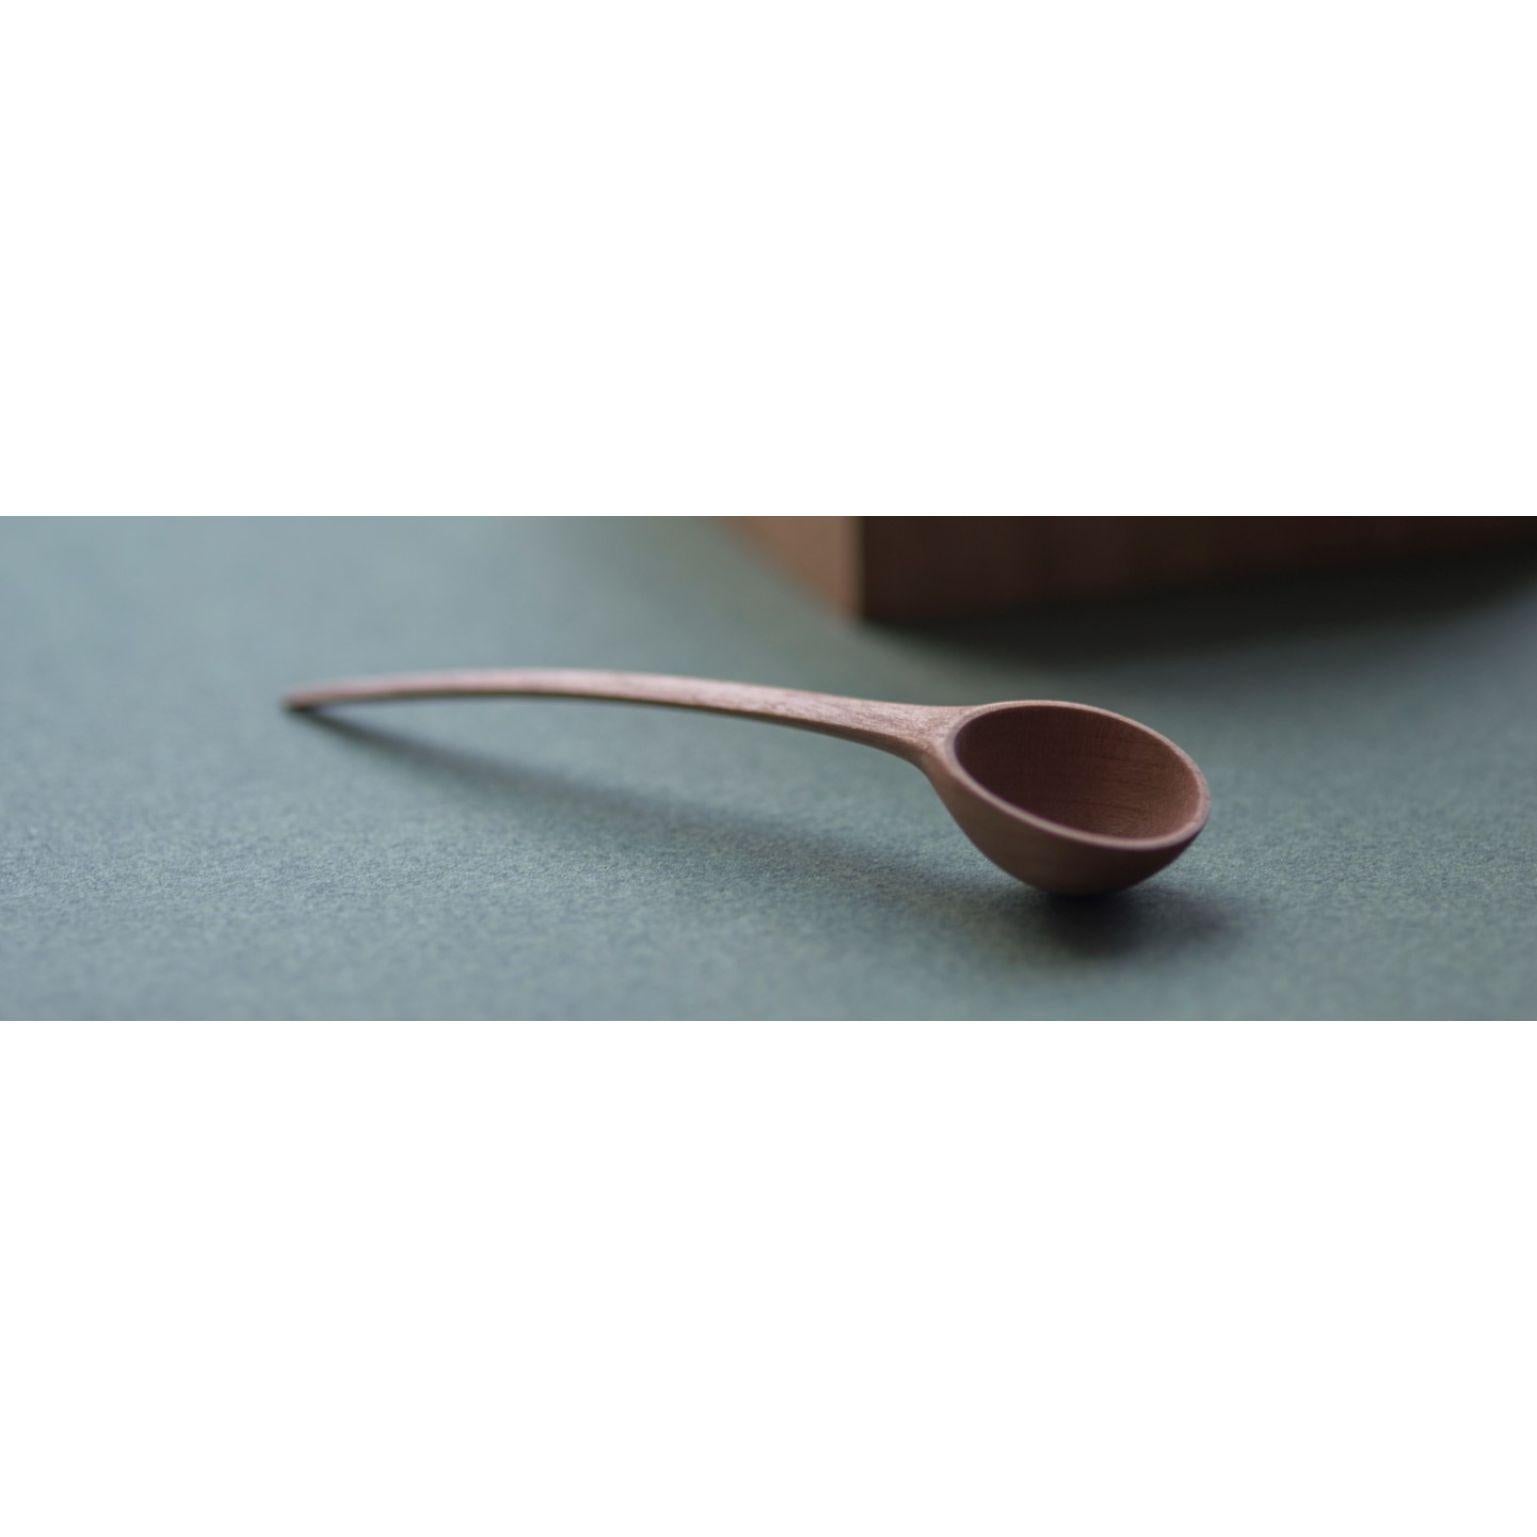 Finnish Pisara Spoon, Small by Antrei Hartikainen